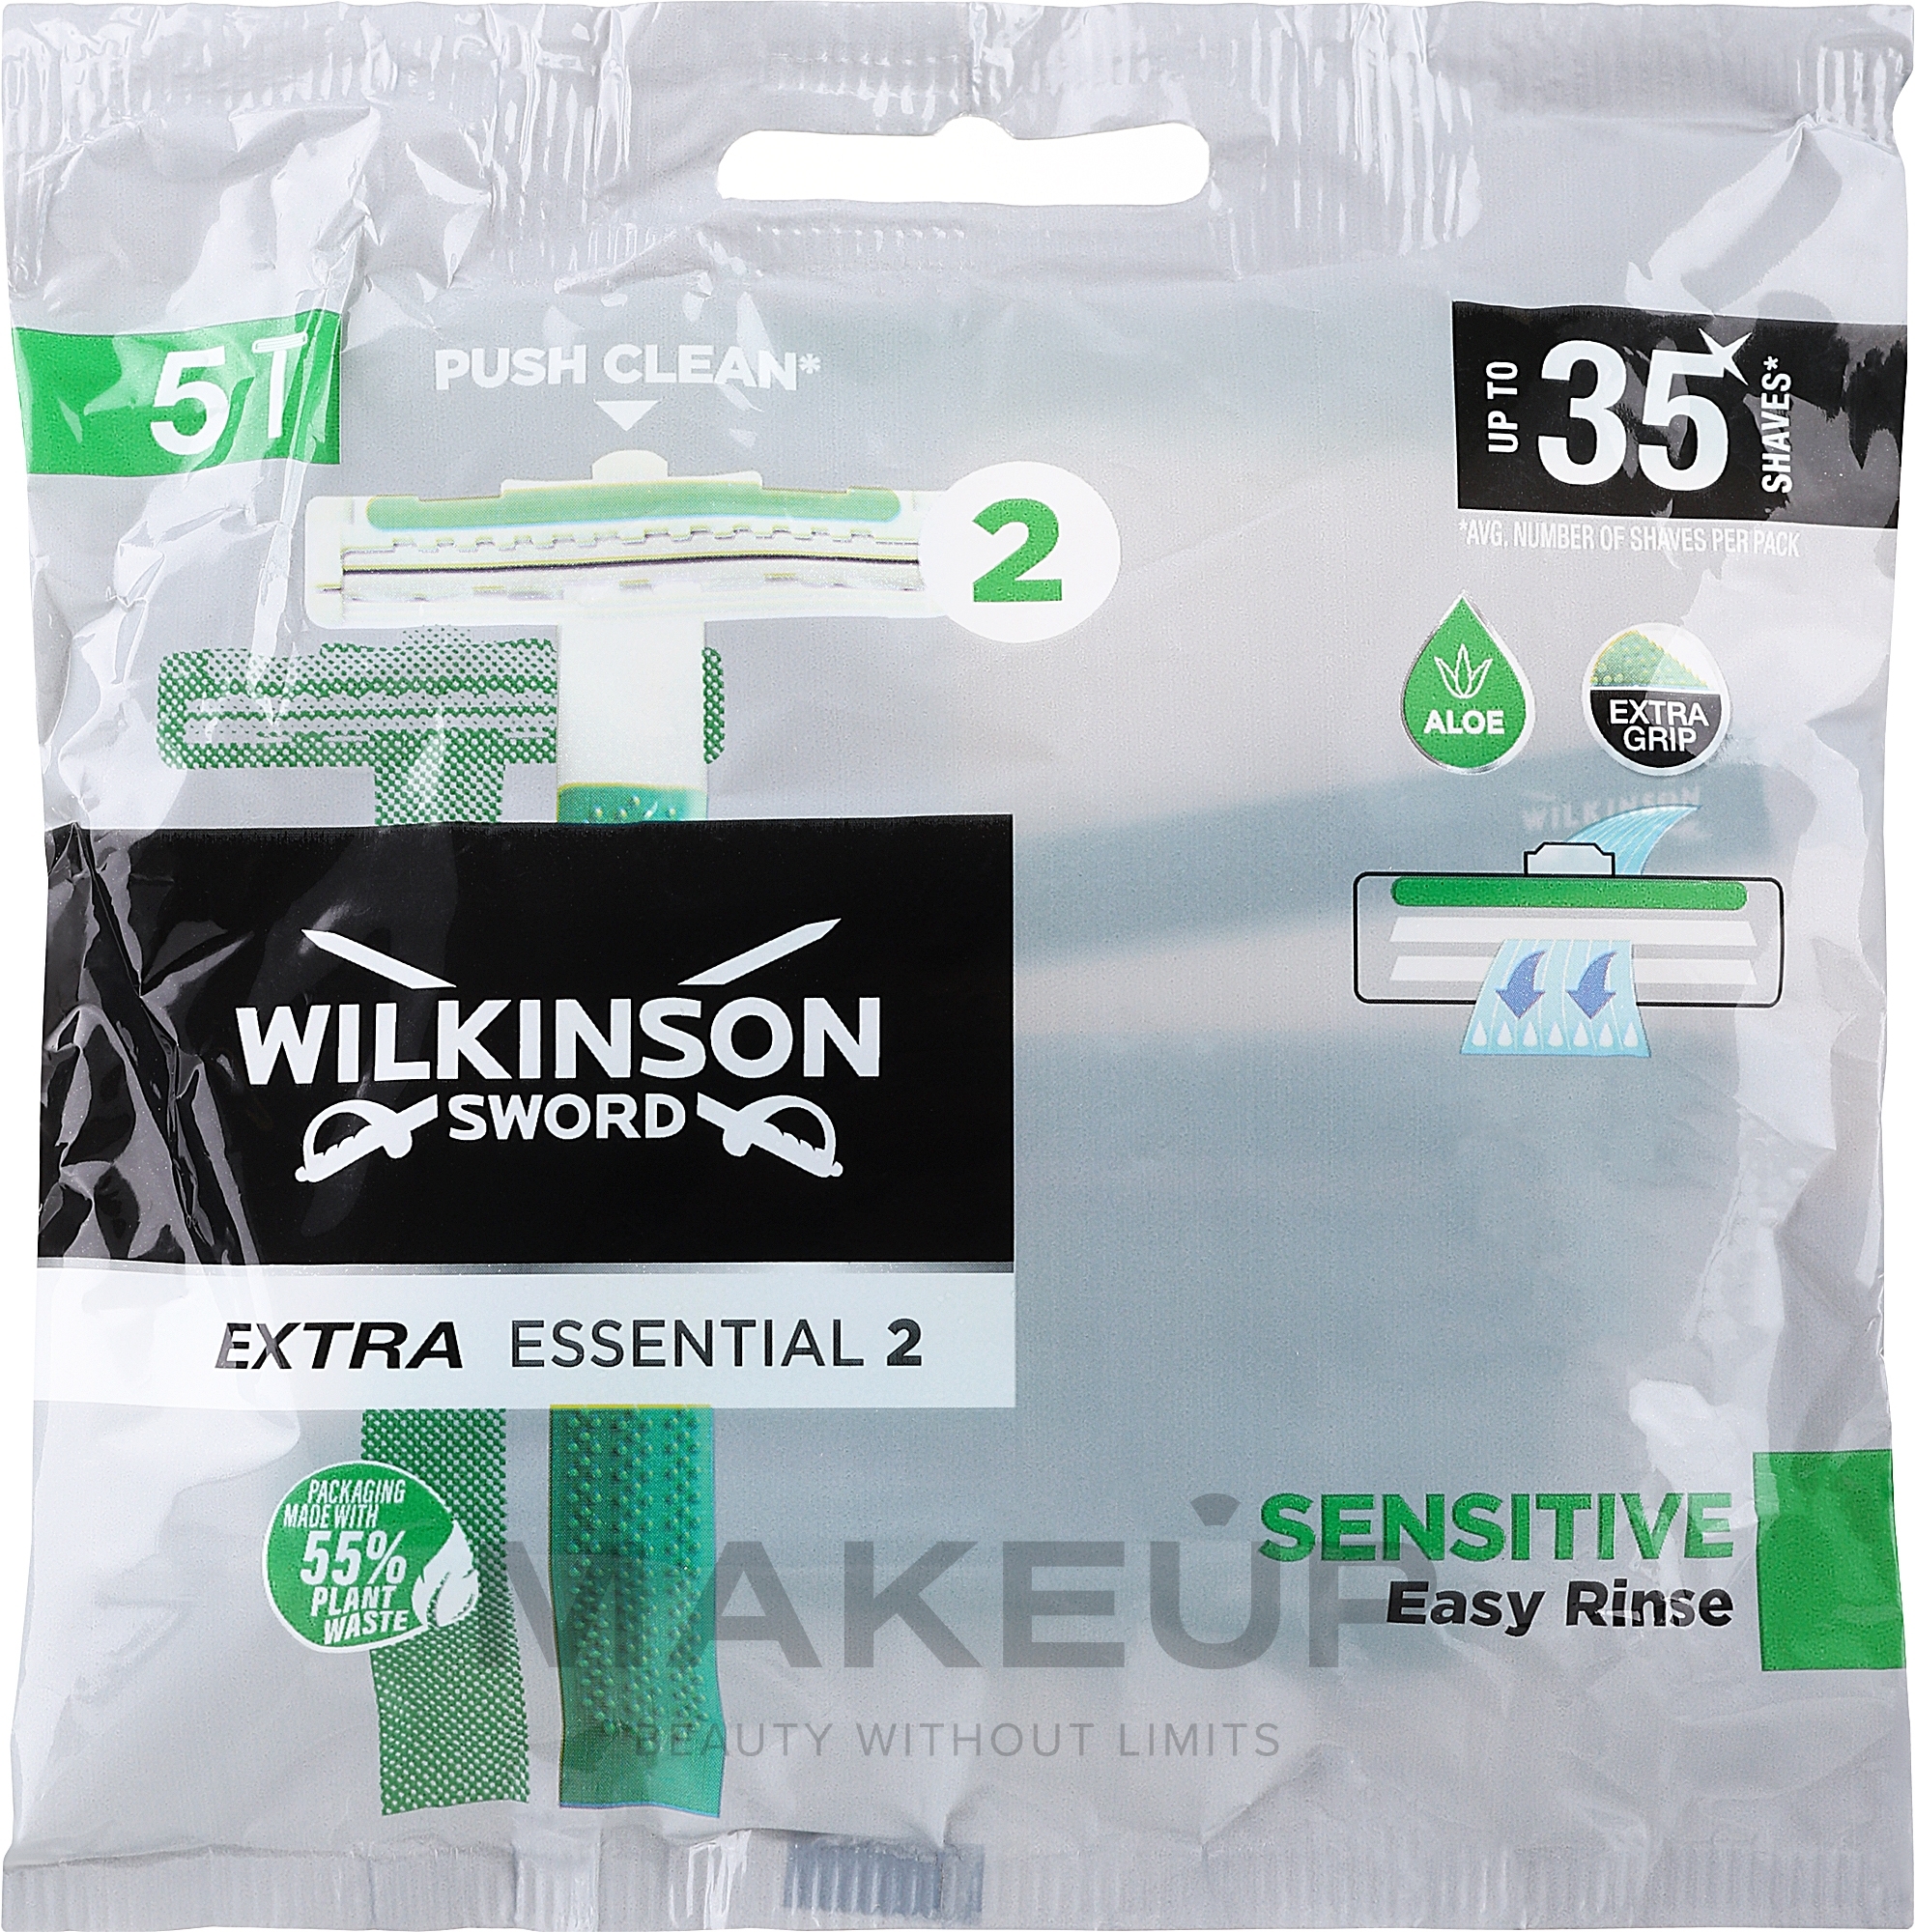 Maszynka do golenia, 5 szt. - Wilkinson Rasoio Extra Essential 2 Sensitive — Zdjęcie 5 szt.